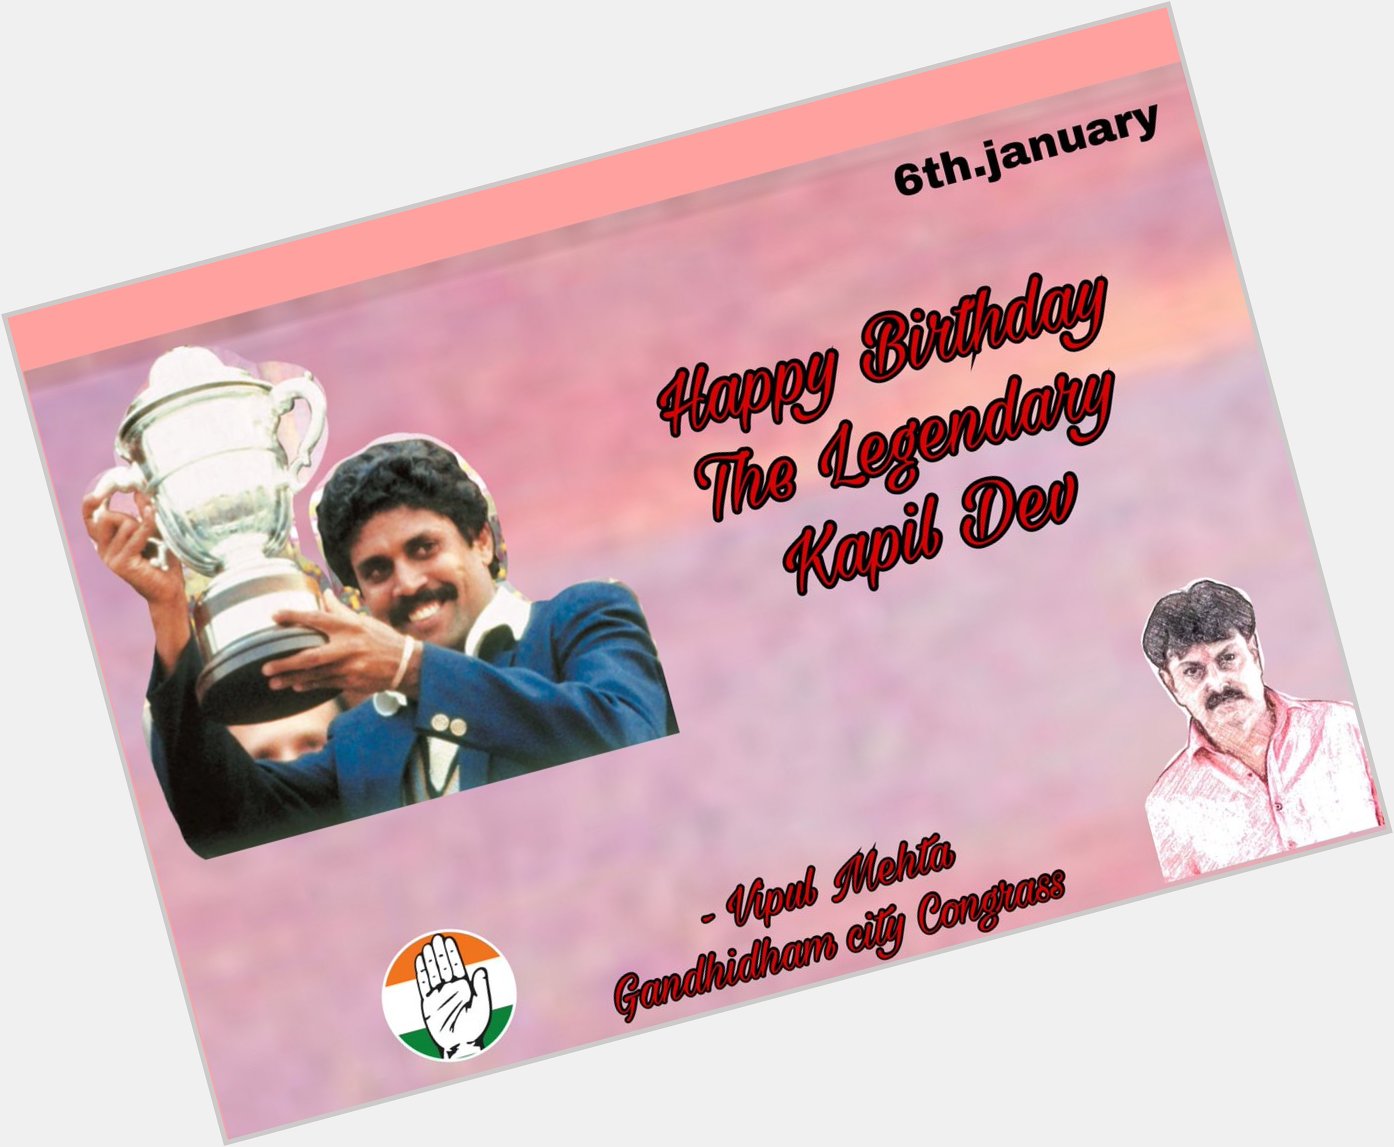 Happy birthday Kapil Dev 